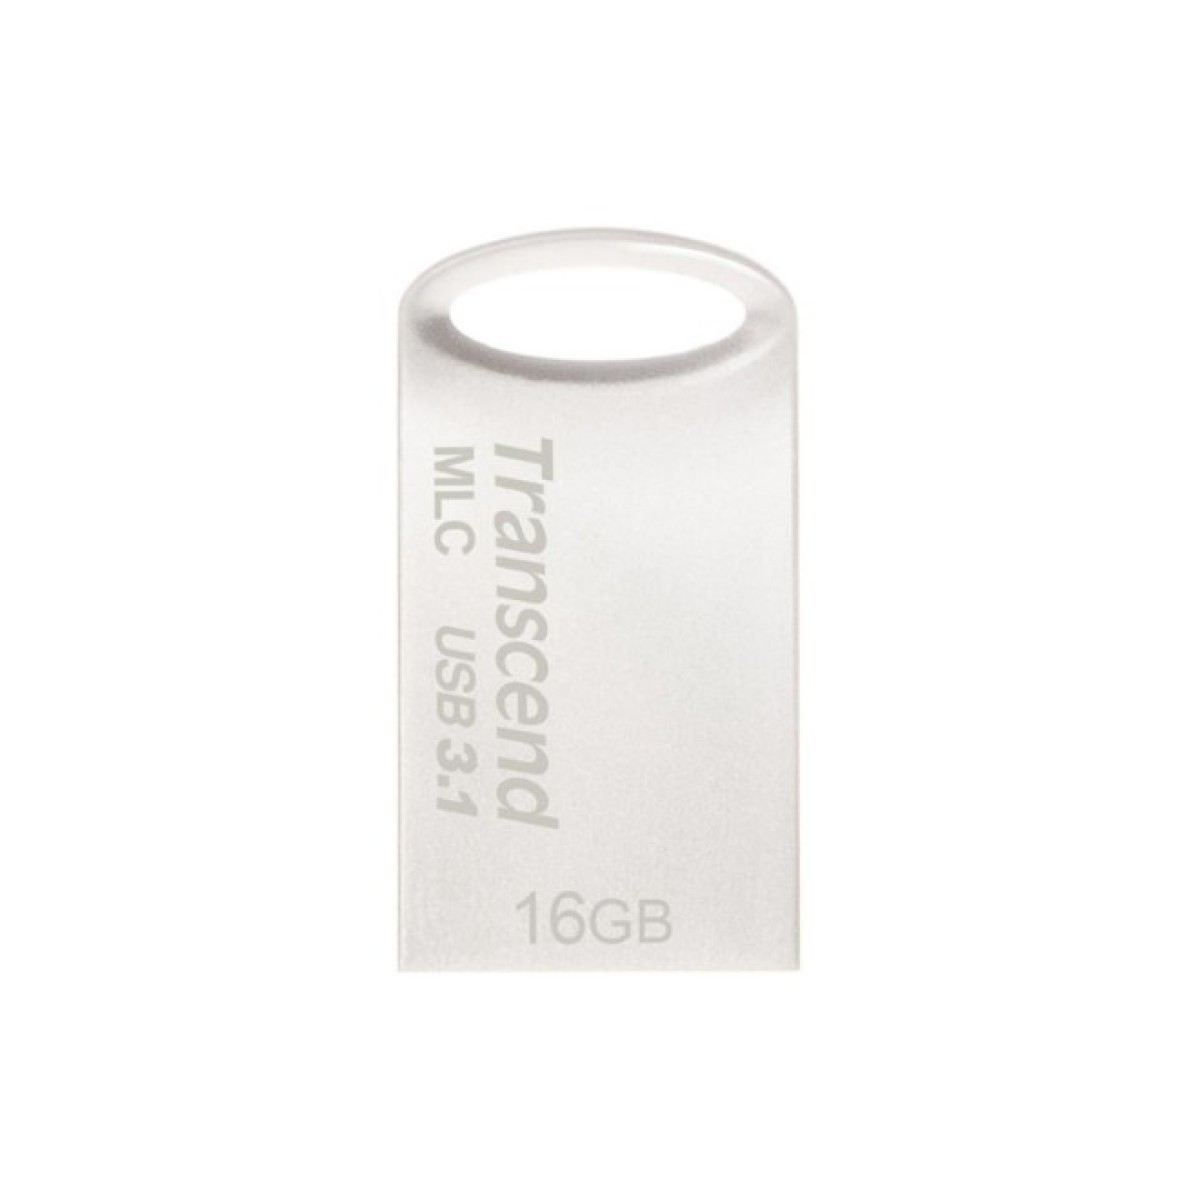 USB флеш накопитель Transcend 16GB JetFlash 720 Silver Plating USB 3.1 (TS16GJF720S) 256_256.jpg